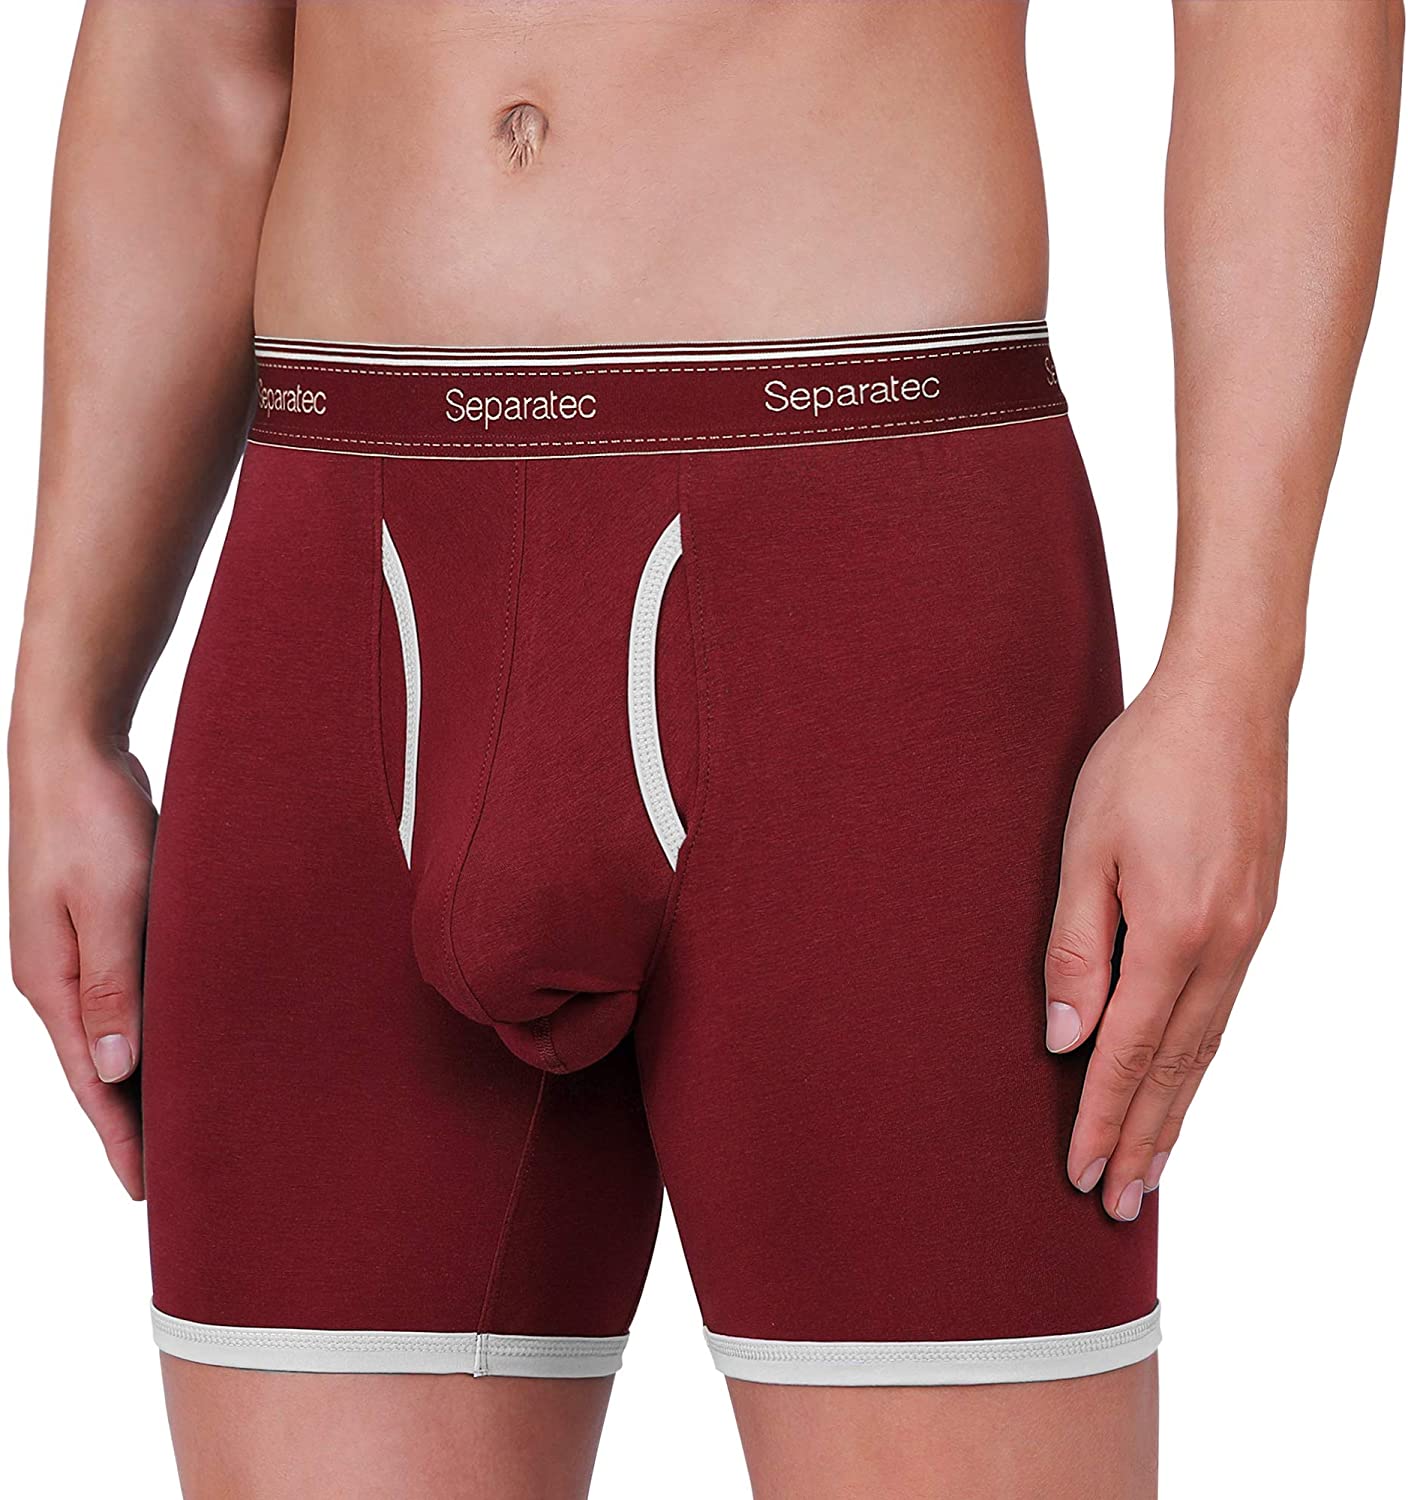 Separatec Men S Underwear Comfort Soft Cotton Boxer Briefs 3 Pack Ebay